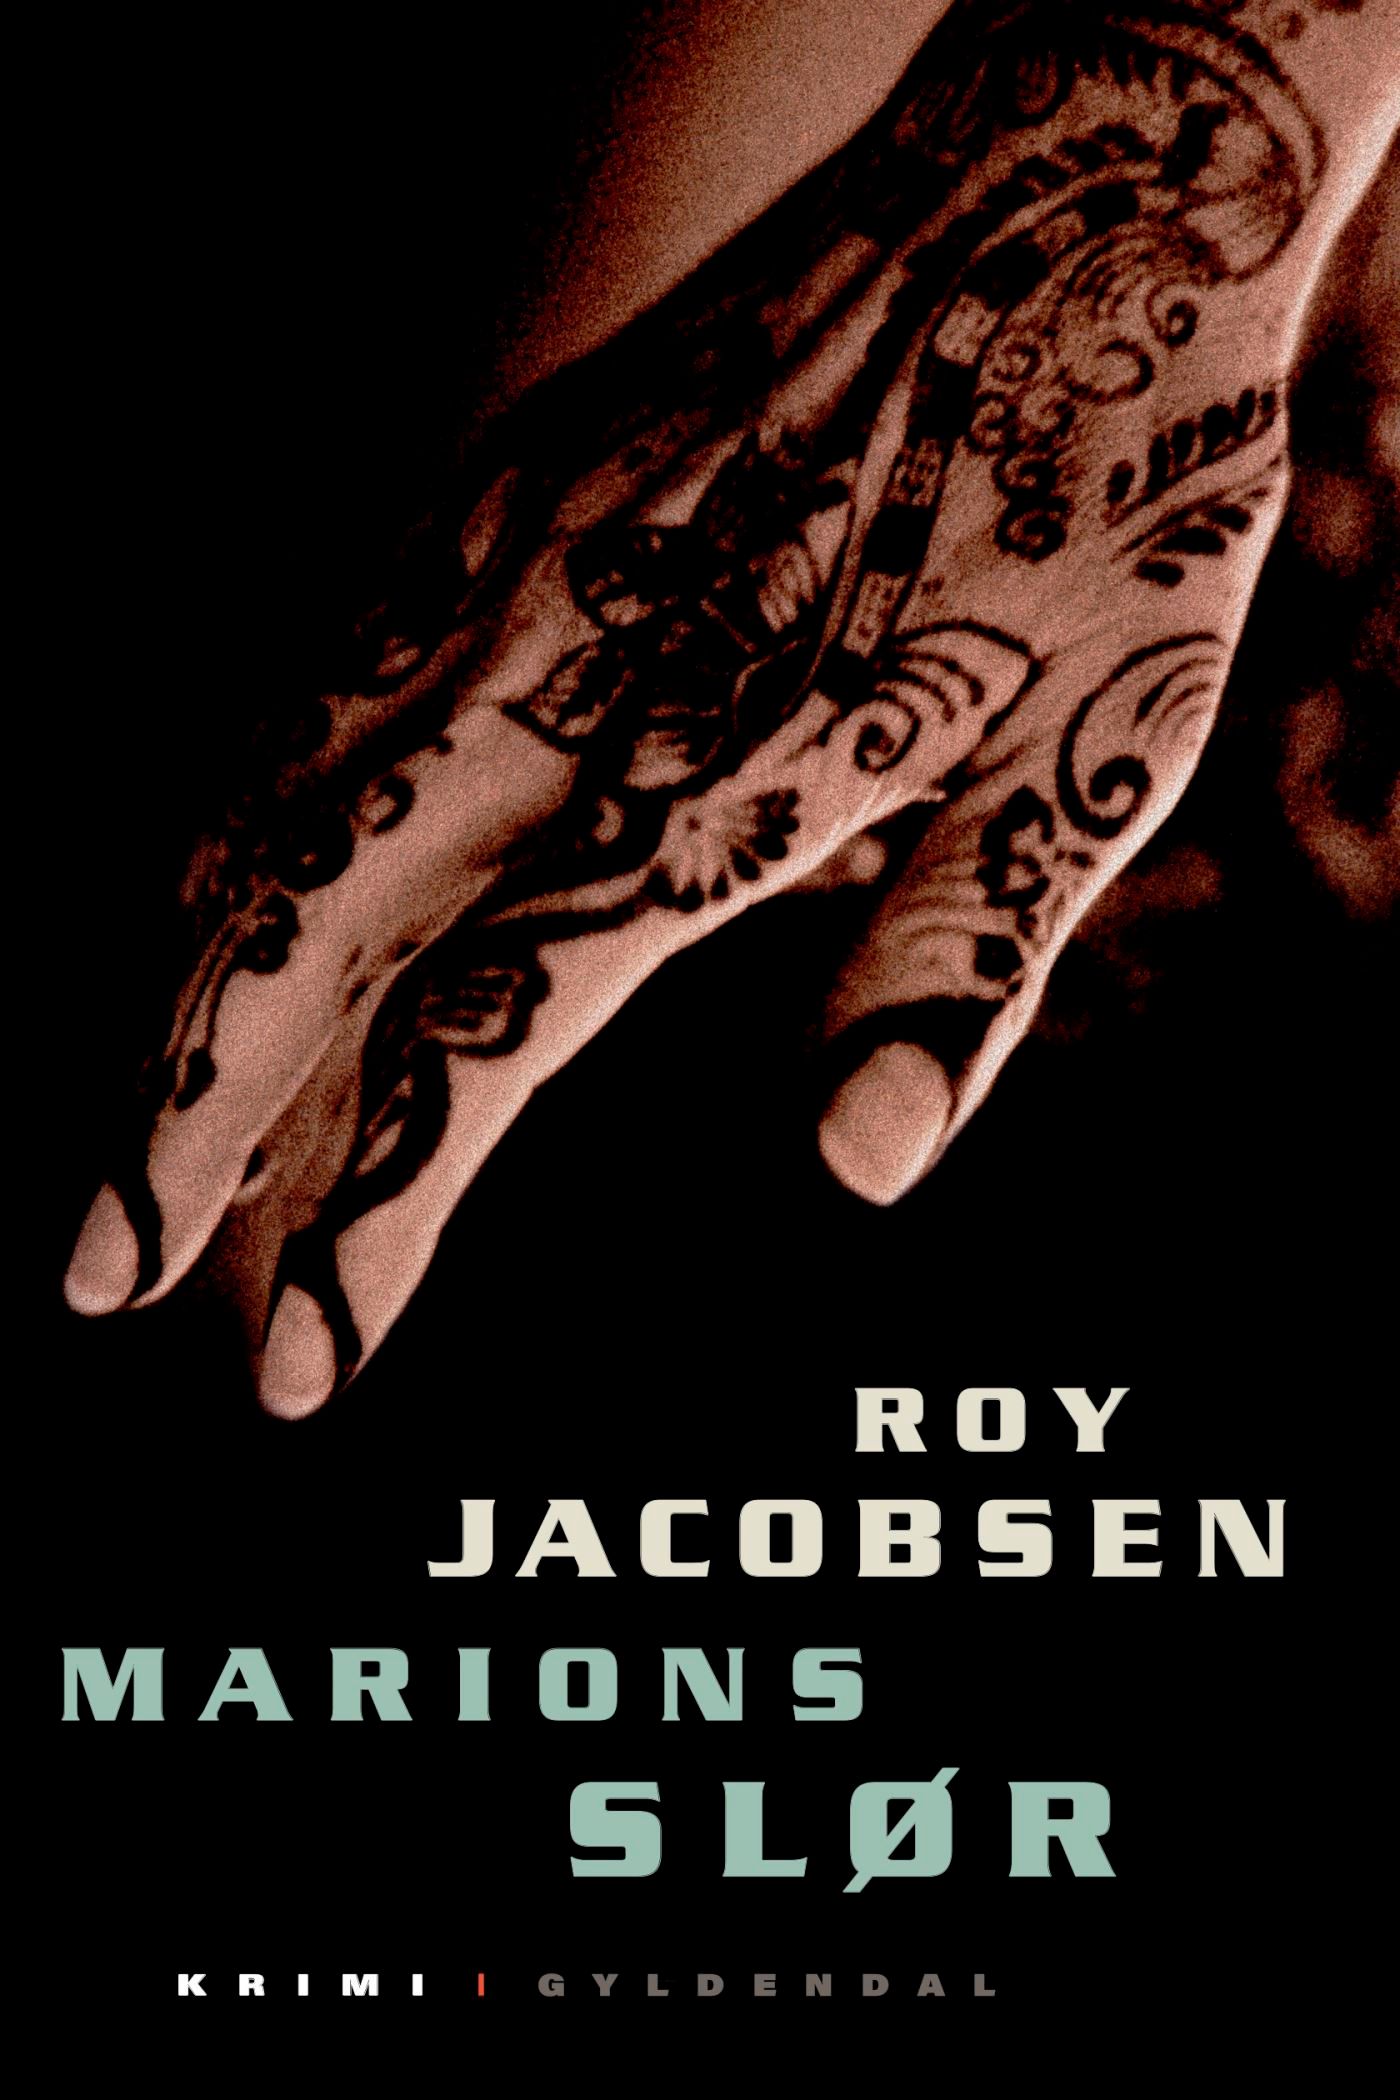 Marions slør, lydbog af Roy Jacobsen